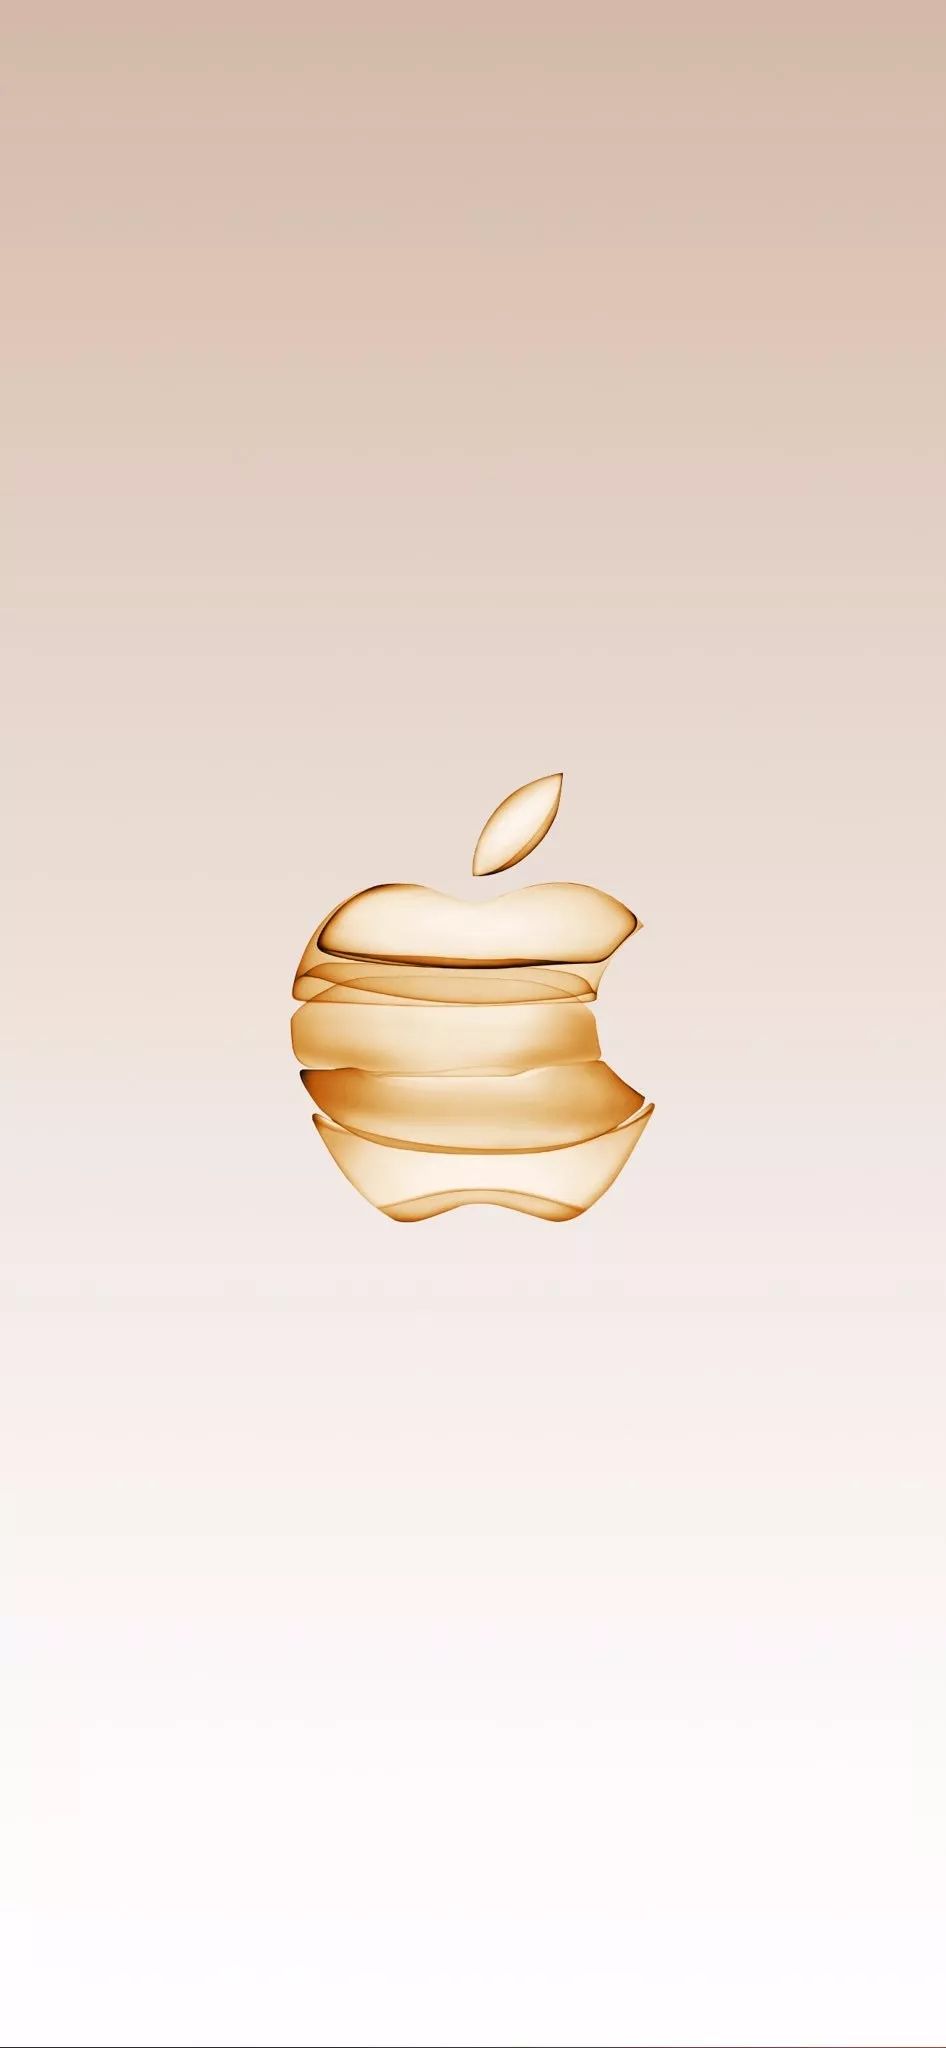 苹果logo原图